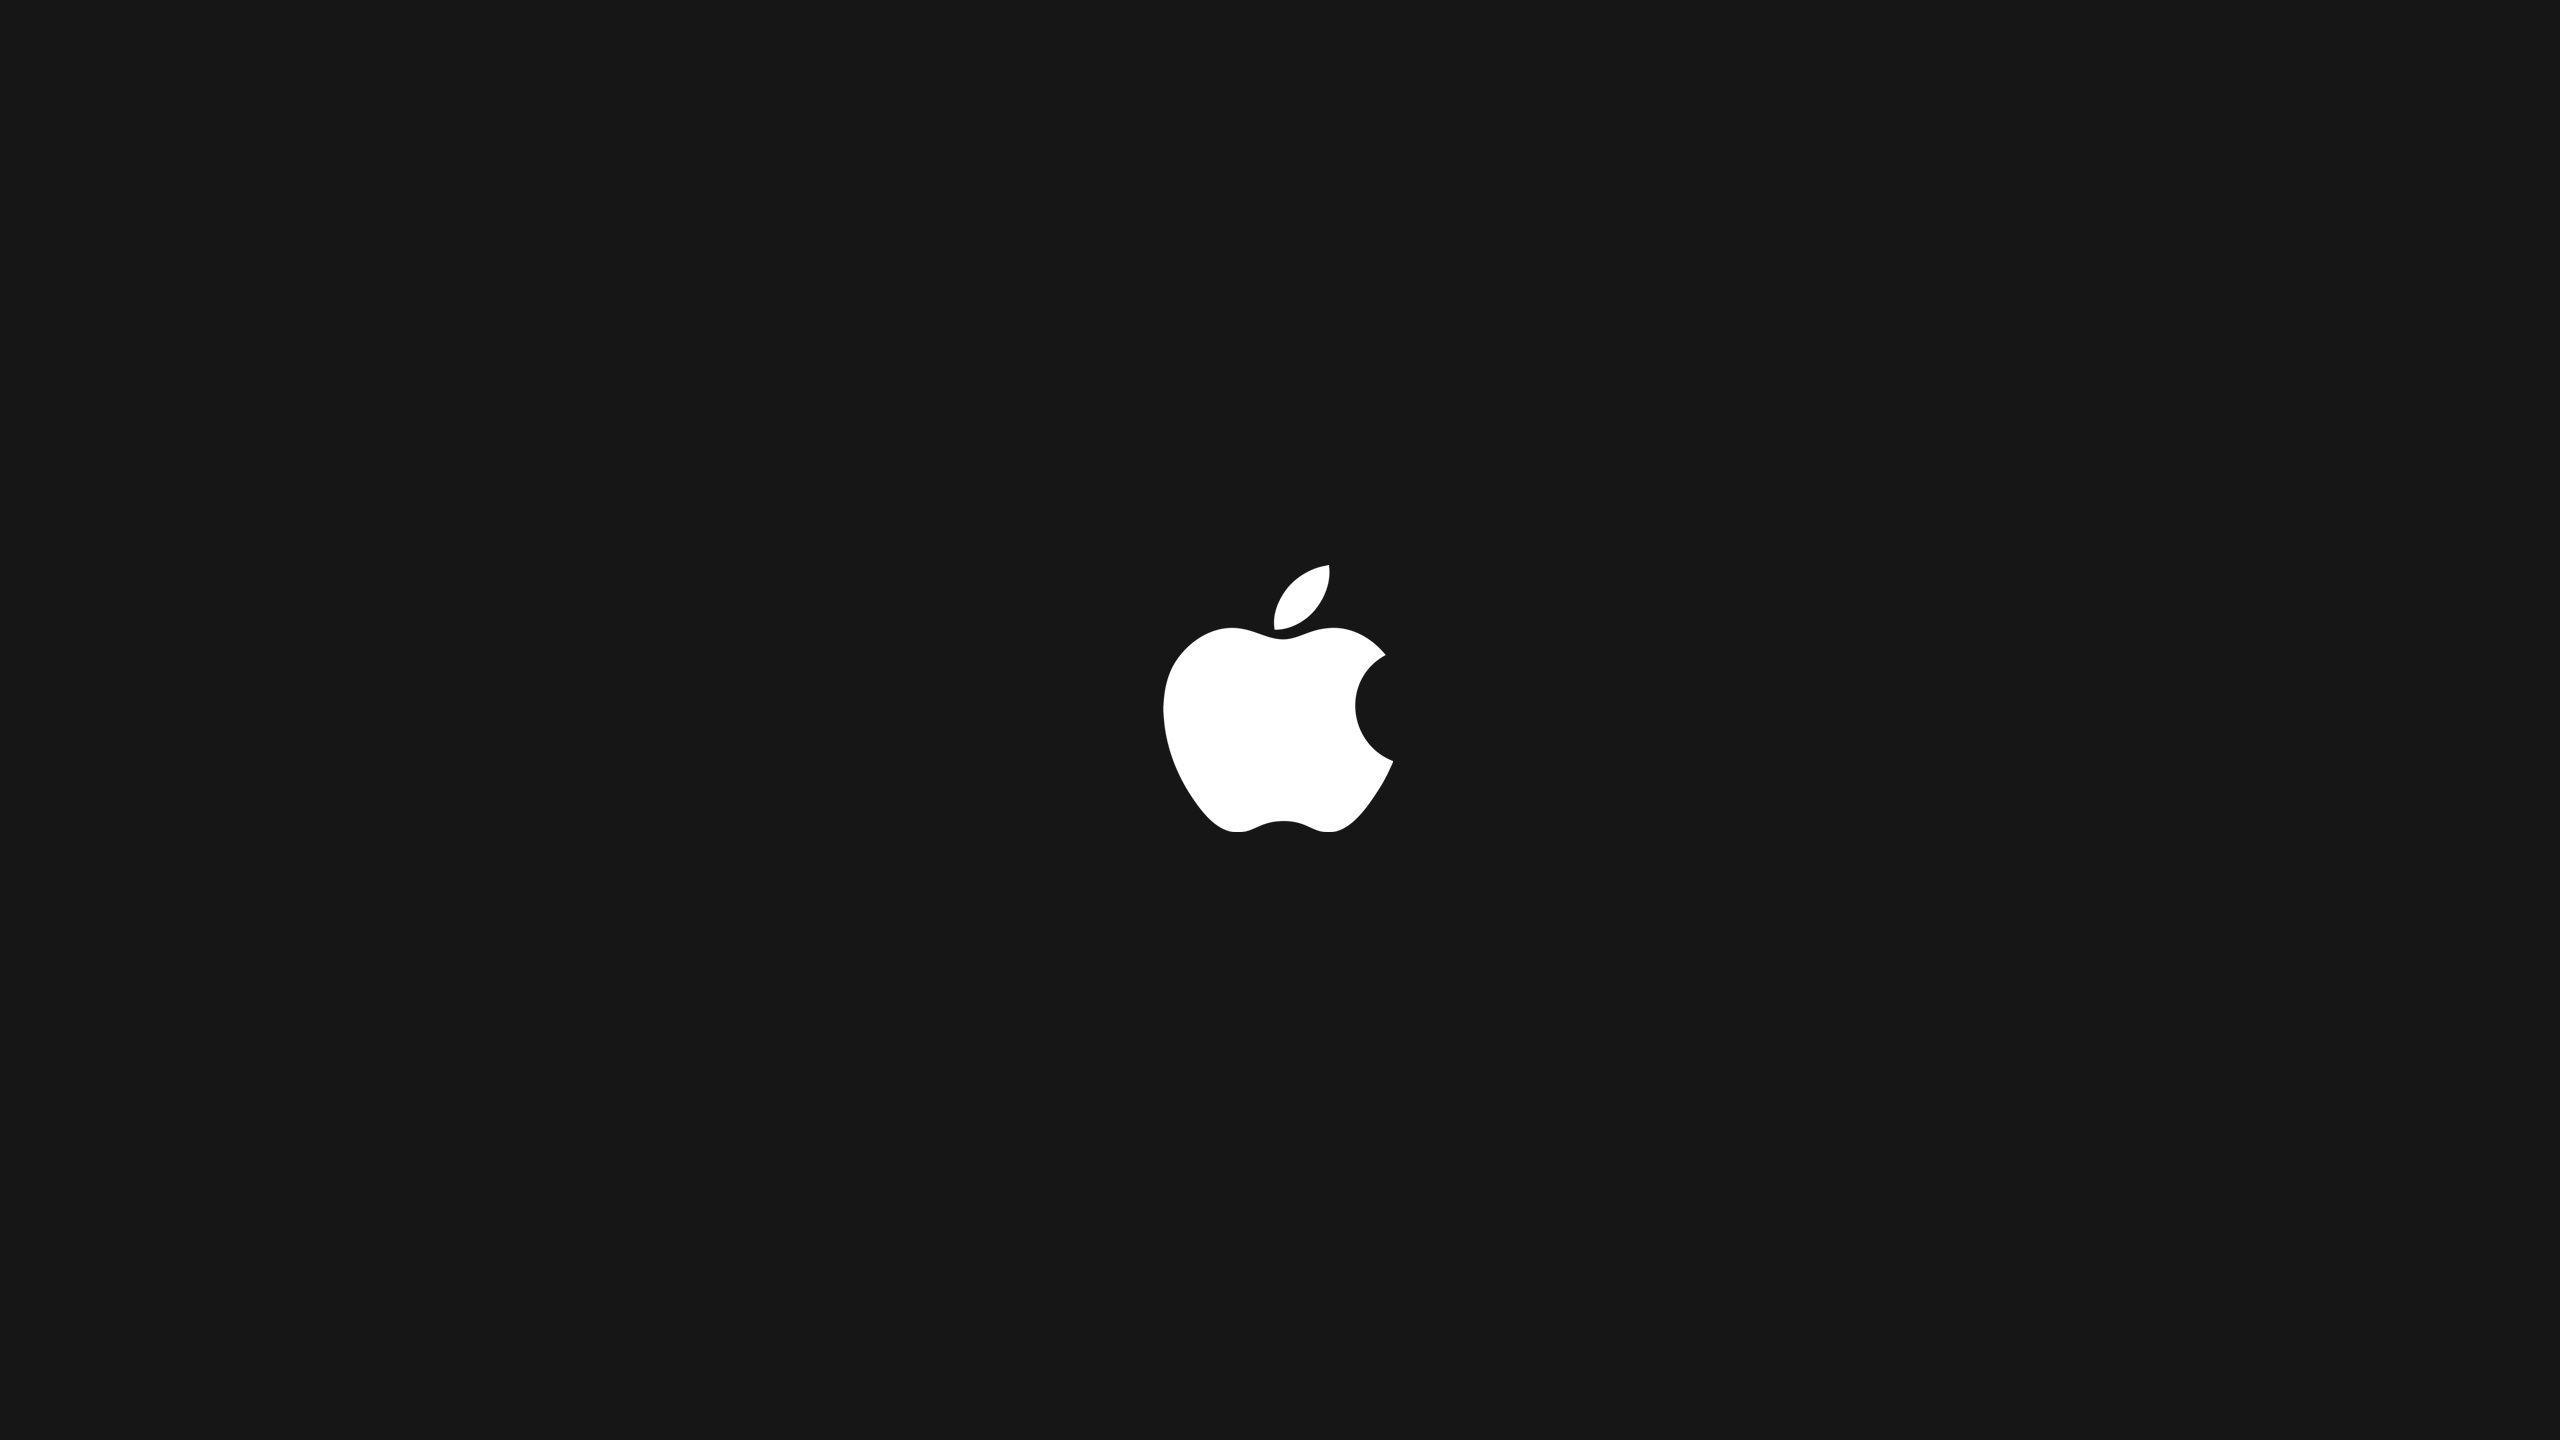 Hình nền Mac với logo táo đang chờ đón bạn! Với sự kết hợp hoàn hảo giữa logo táo và màn hình Mac, hình nền này sẽ khiến cho màn hình của bạn trở nên tuyệt vời hơn bao giờ hết. Hãy xem ngay để khám phá thêm về một thiết kế hoàn hảo và đầy sáng tạo!